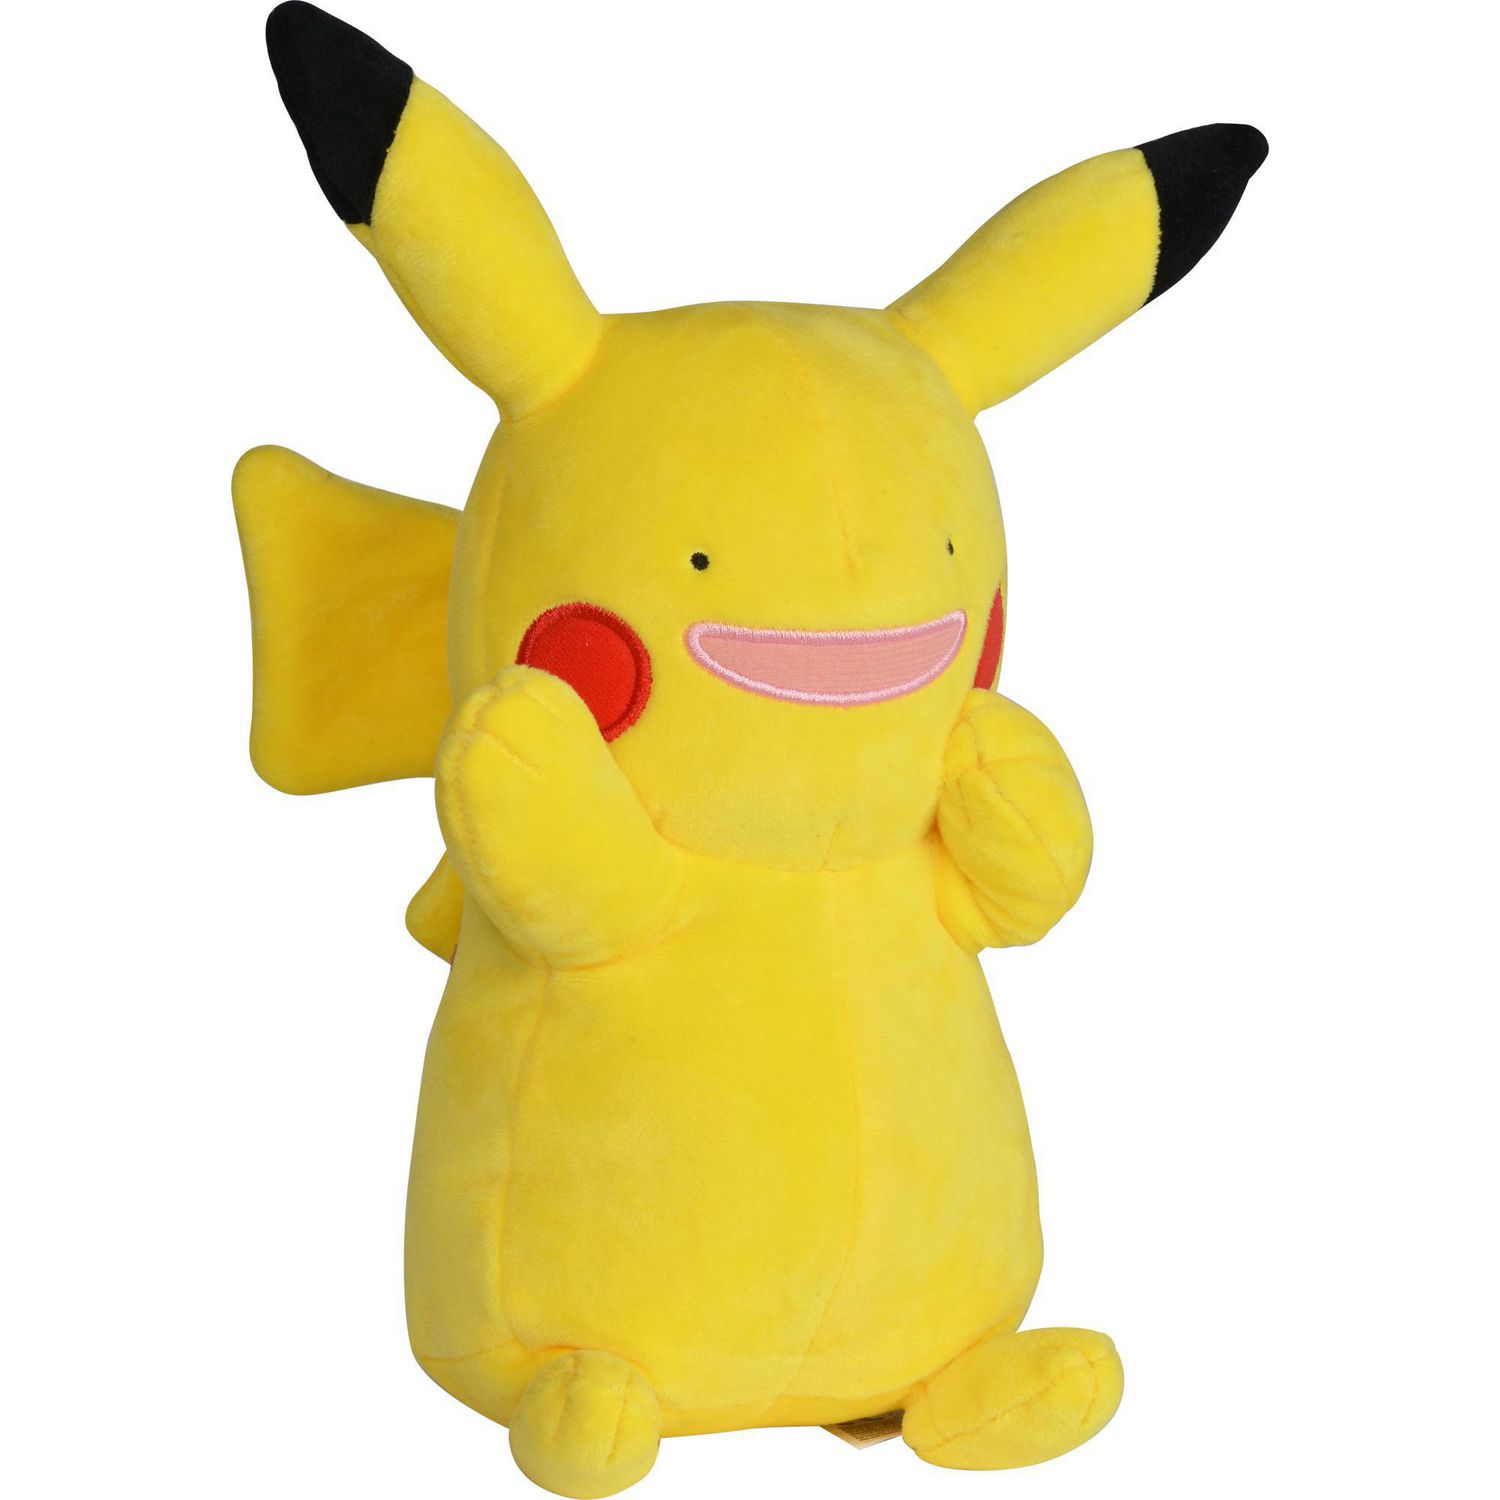 Peluche Pokémon des Fêtes de 20 cm - Pikachu - Notre exclusivité